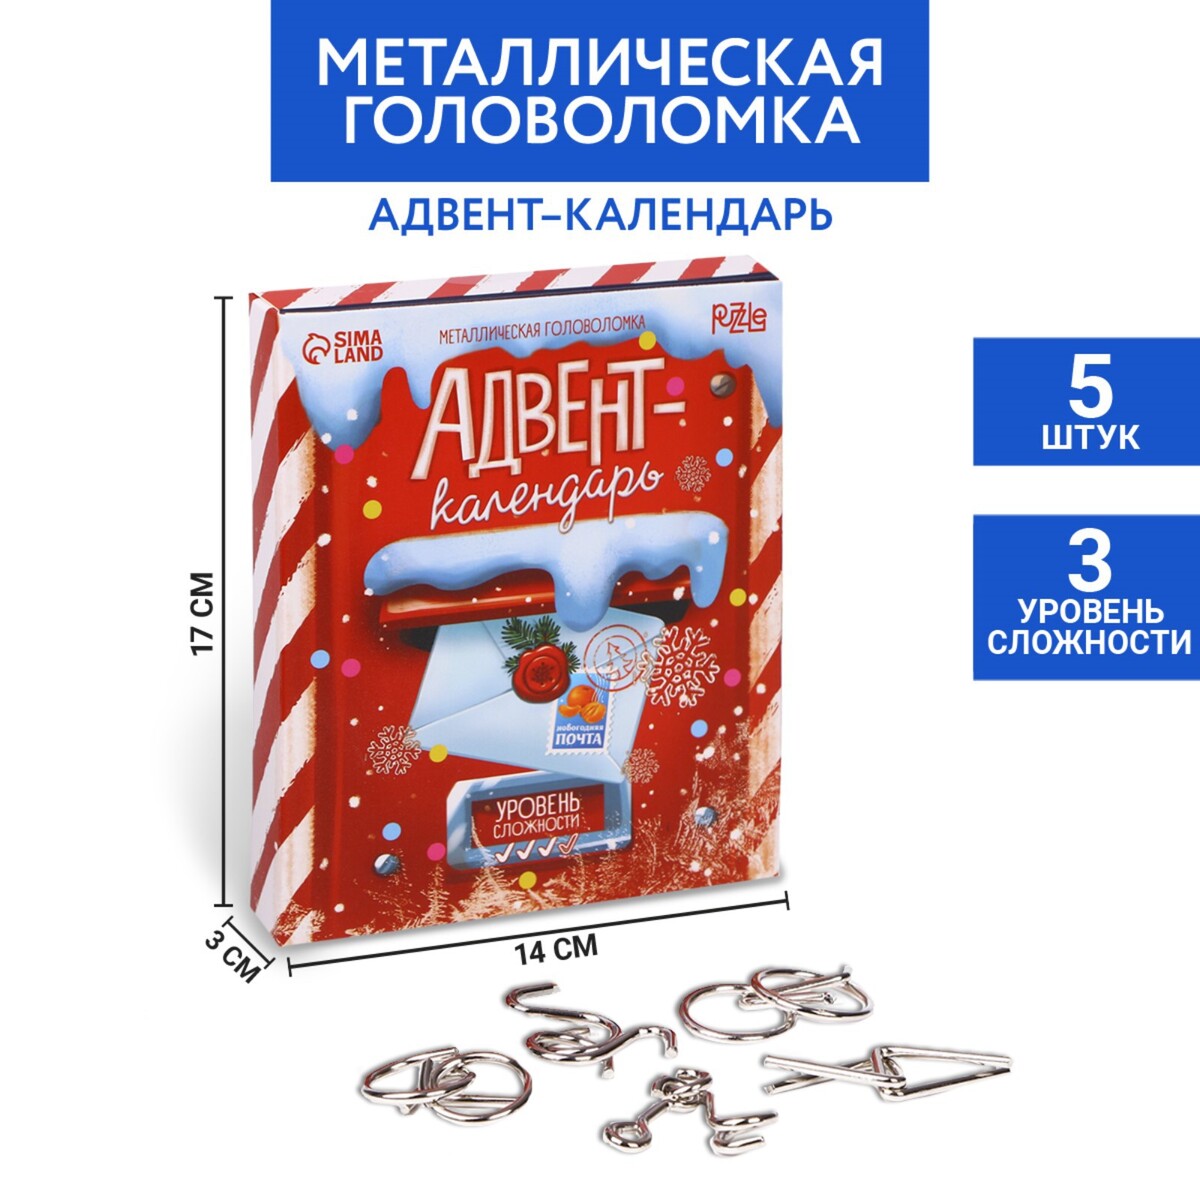 Новогодняя головоломка металлическая головоломка металлическая м узел 2 элемента арт dlm 19